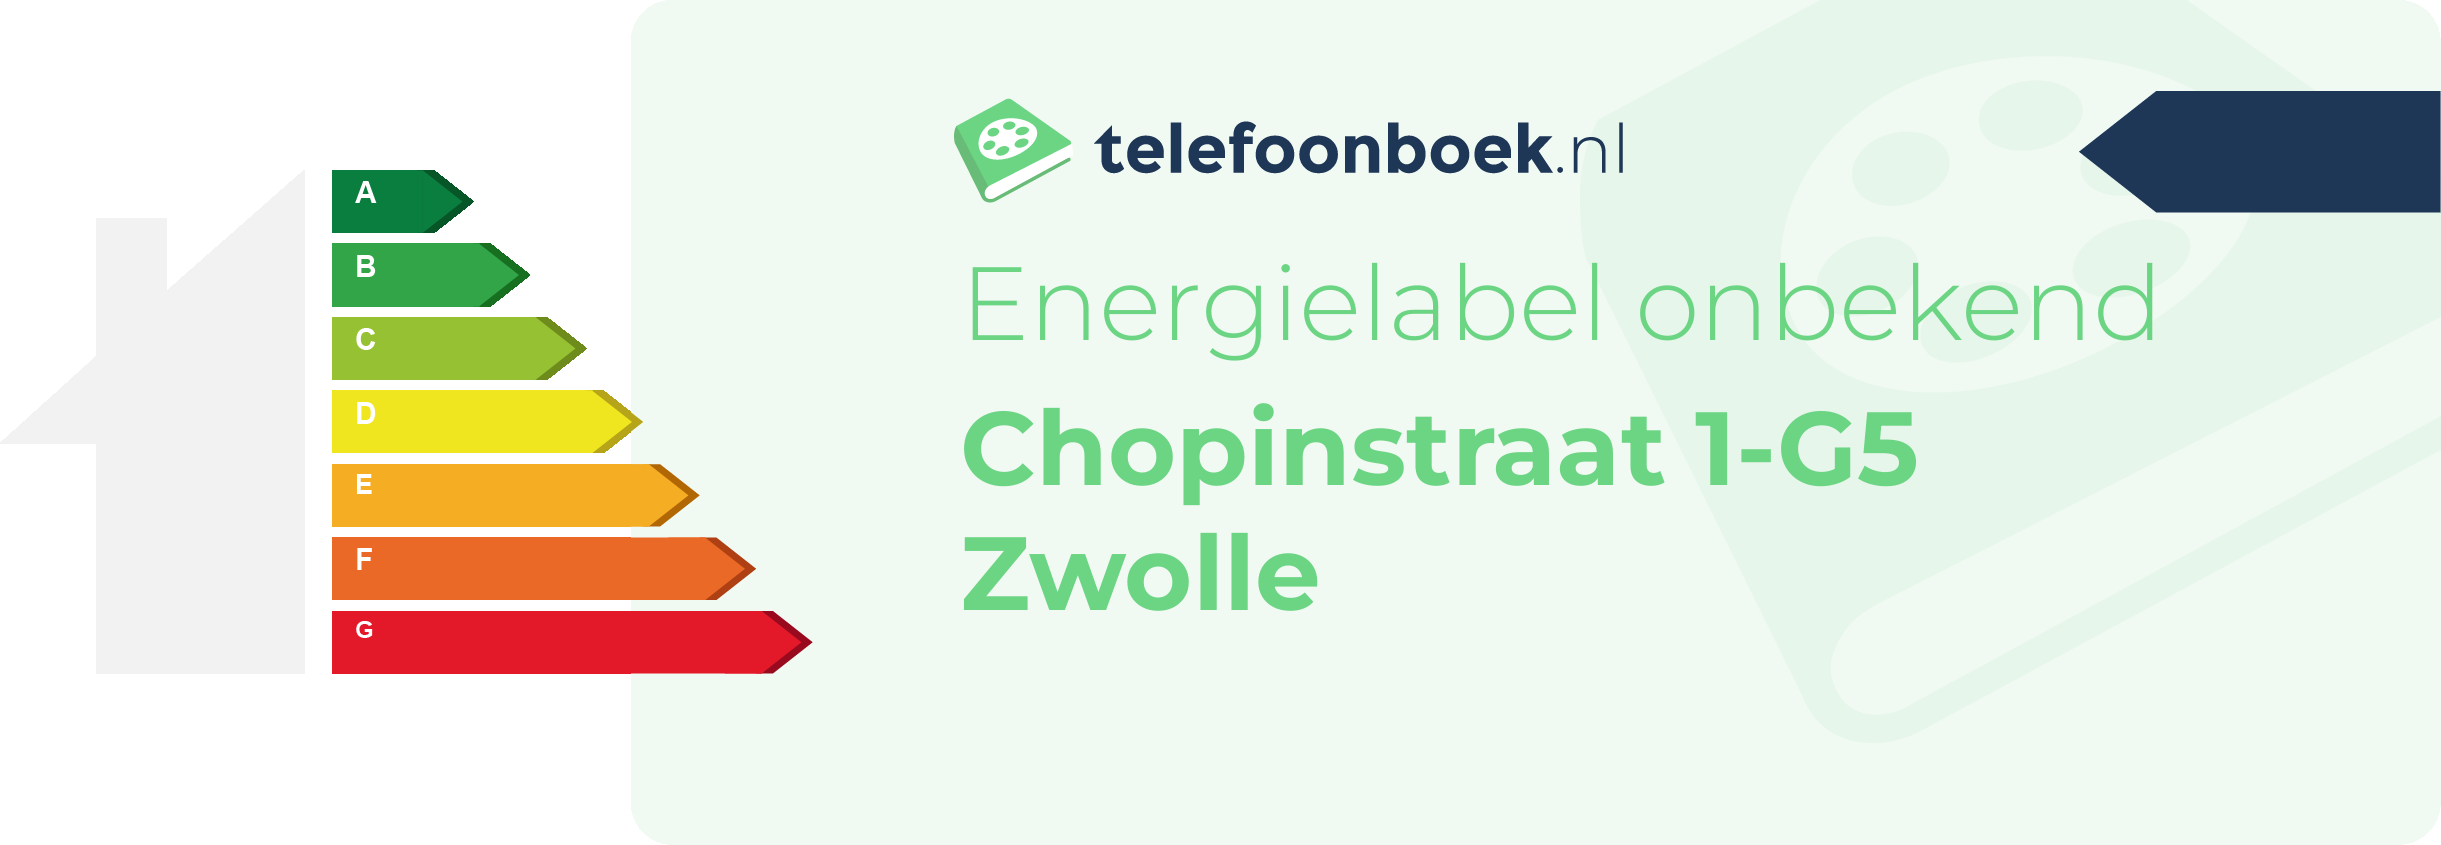 Energielabel Chopinstraat 1-G5 Zwolle